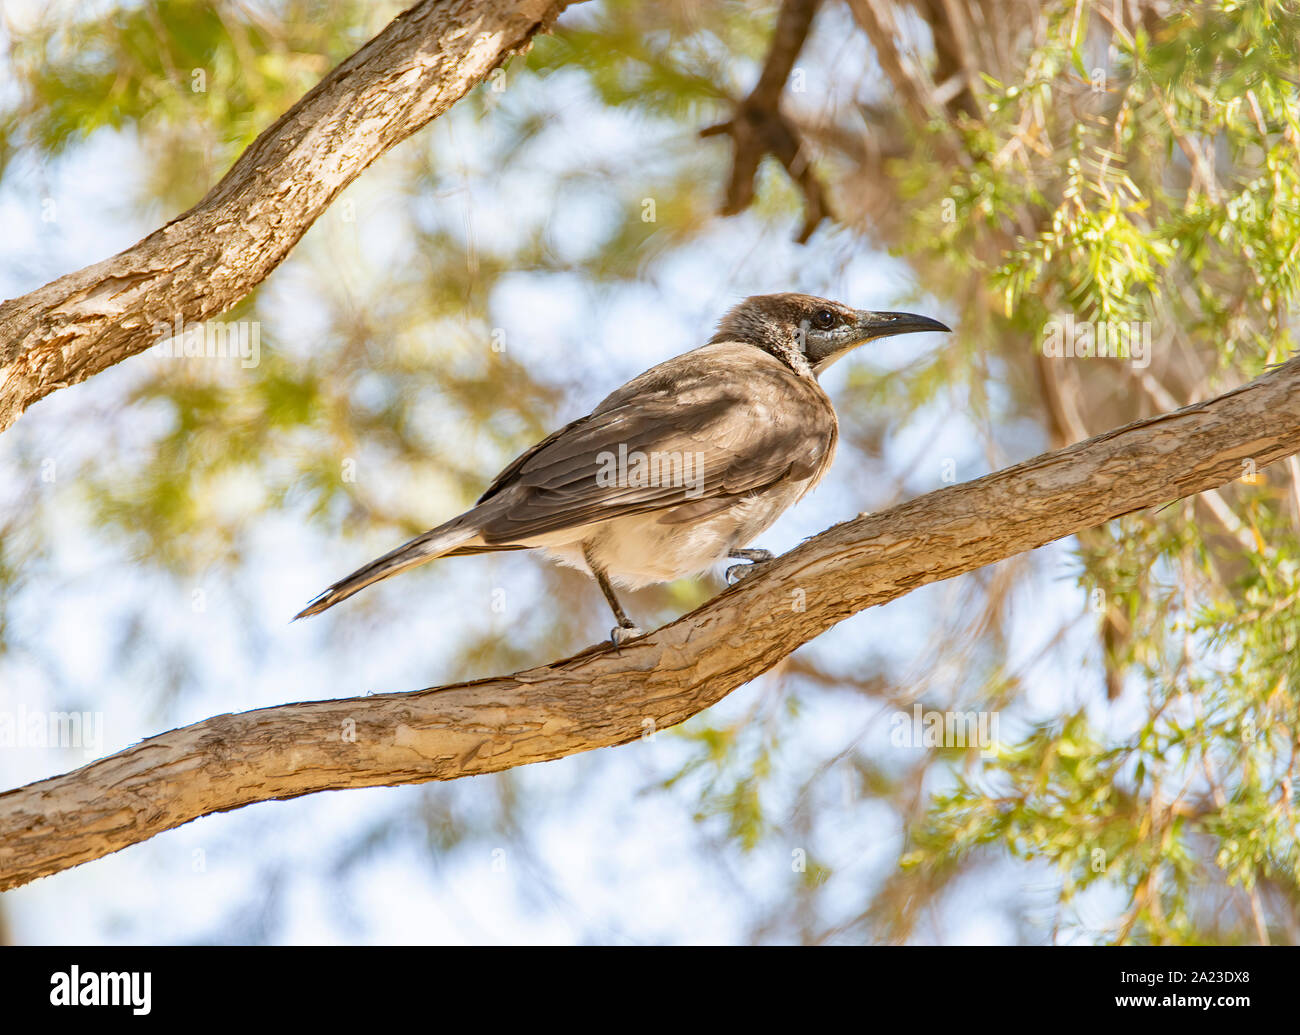 Un petit frère oiseau perché sur une branche contre un arrière-plan de feuilles Banque D'Images